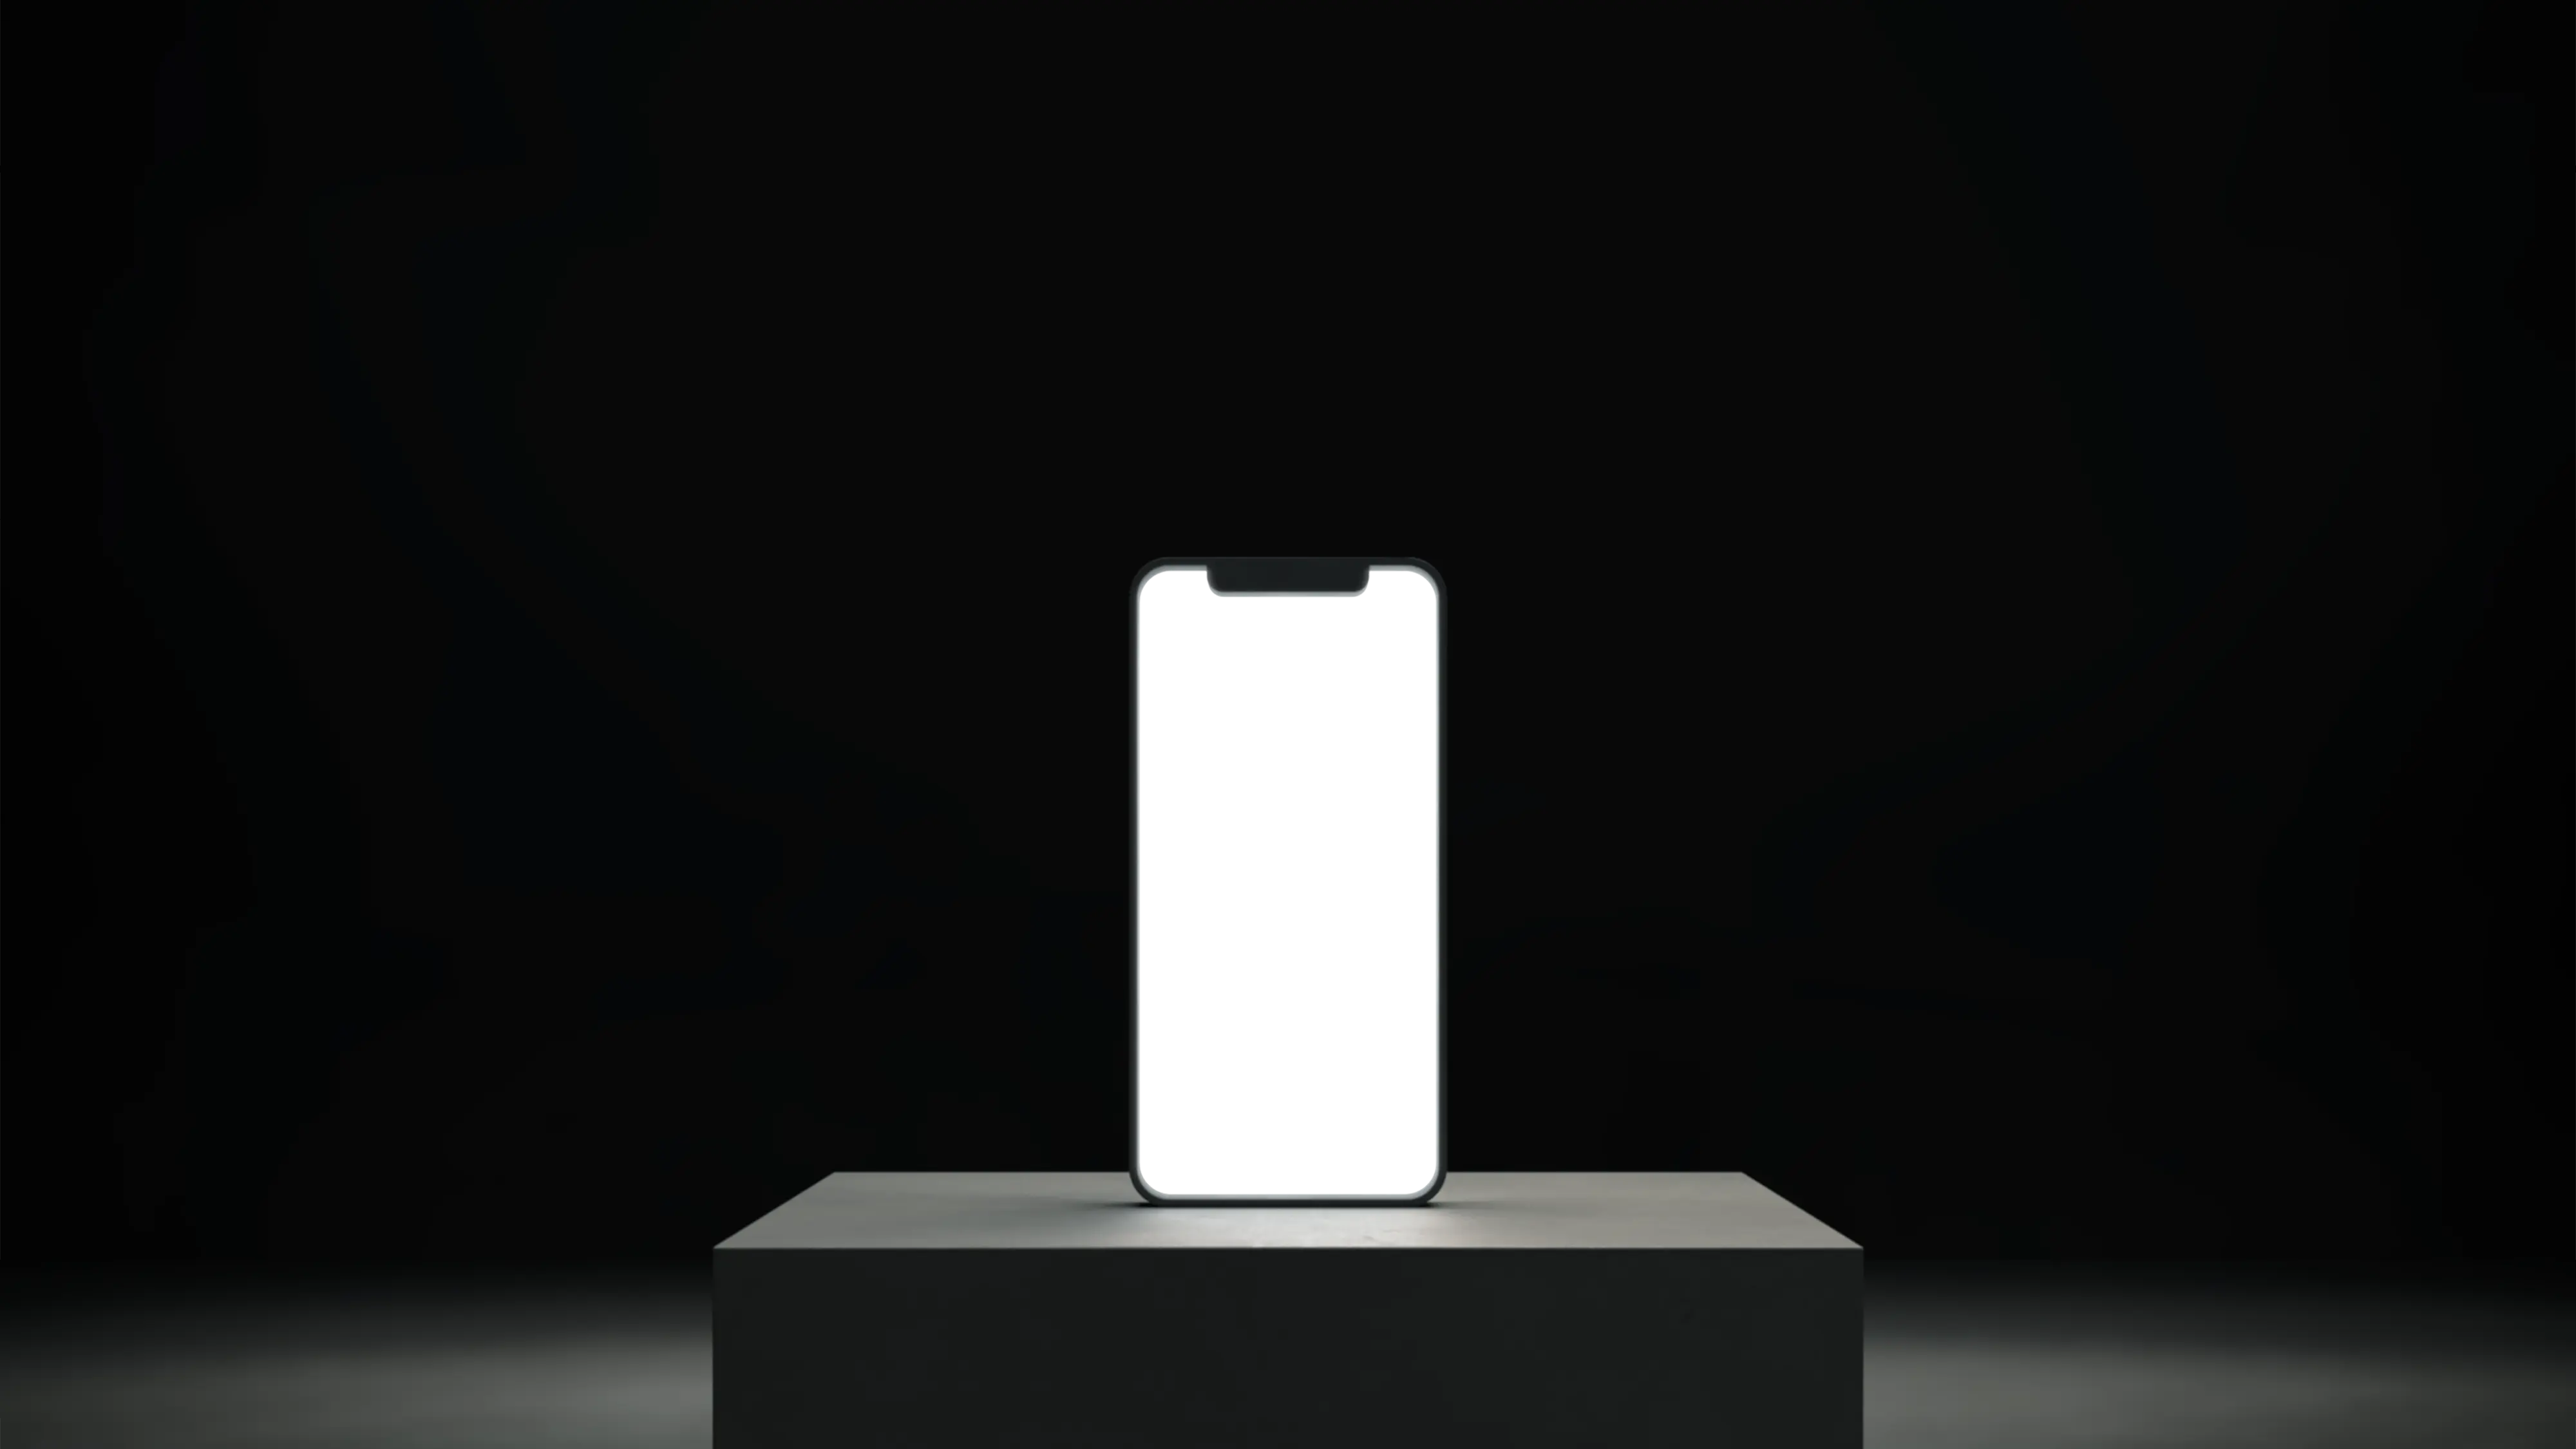 Điện thoại thông minh đặt trên bệ với màn hình trắng, để trống, phát sáng.